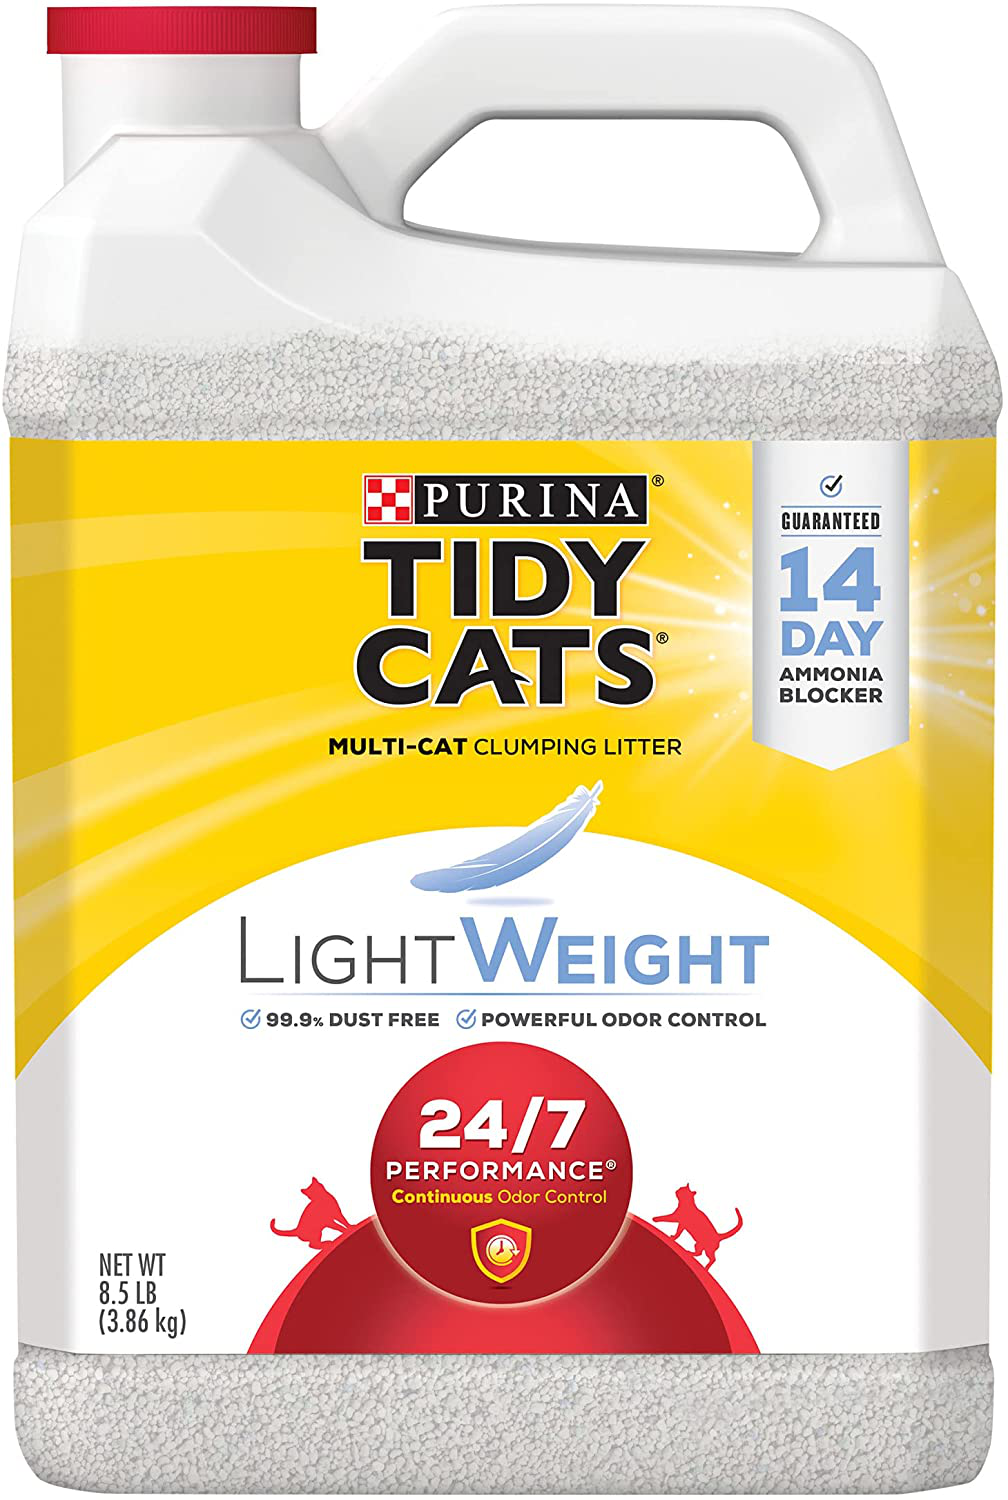 Purina Tidy Cats Lightweight 24/7 Performance Clumping Cat Litter Animals & Pet Supplies > Pet Supplies > Cat Supplies > Cat Litter Purina Tidy Cats 24/7 Performance (2) 8.5 lb. Jugs 